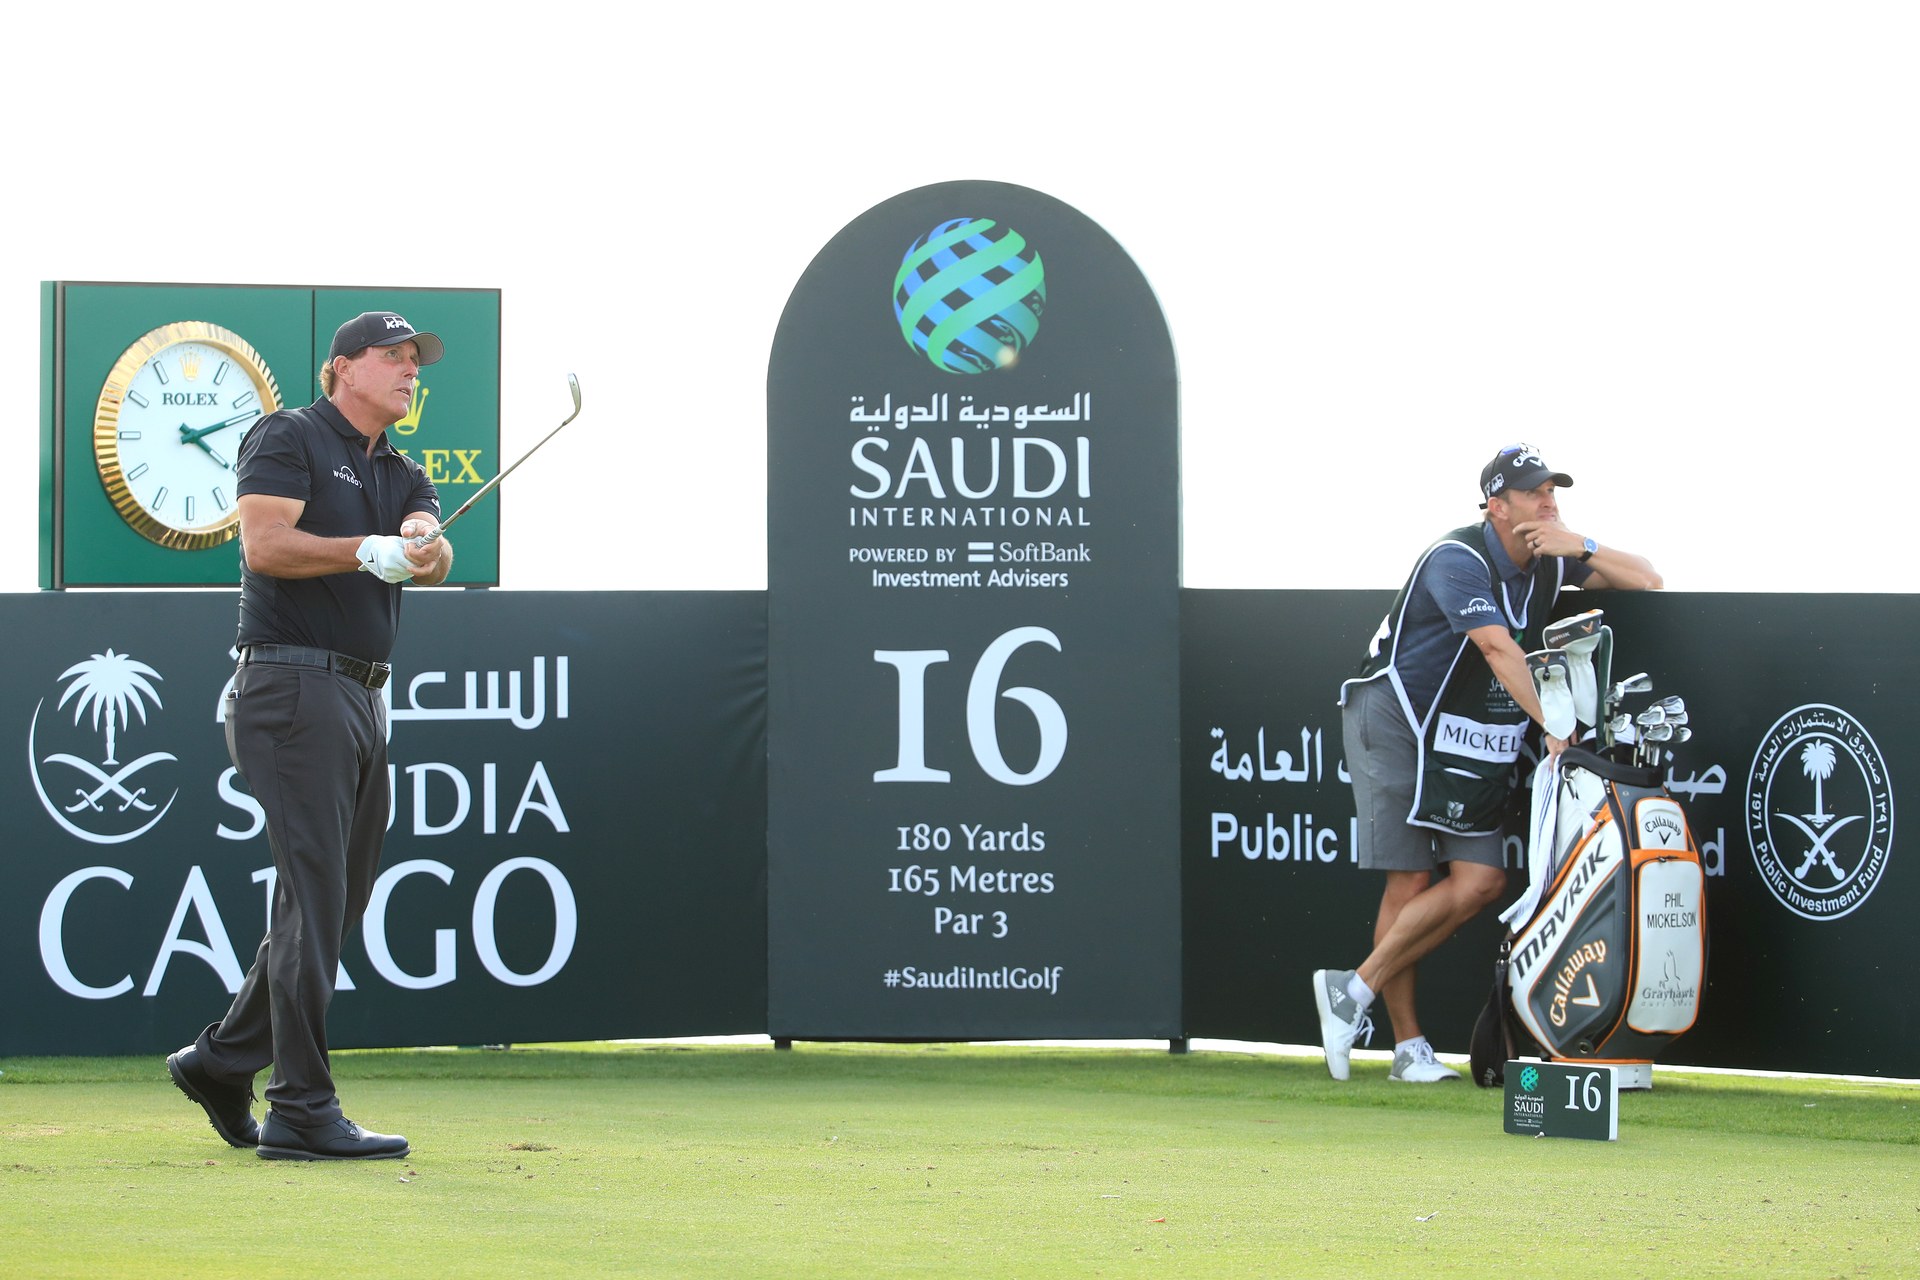 Ghi 7 birdie ở nửa cuối, Phil Mickelson vào nhóm dẫn đầu vòng 1 Saudi International